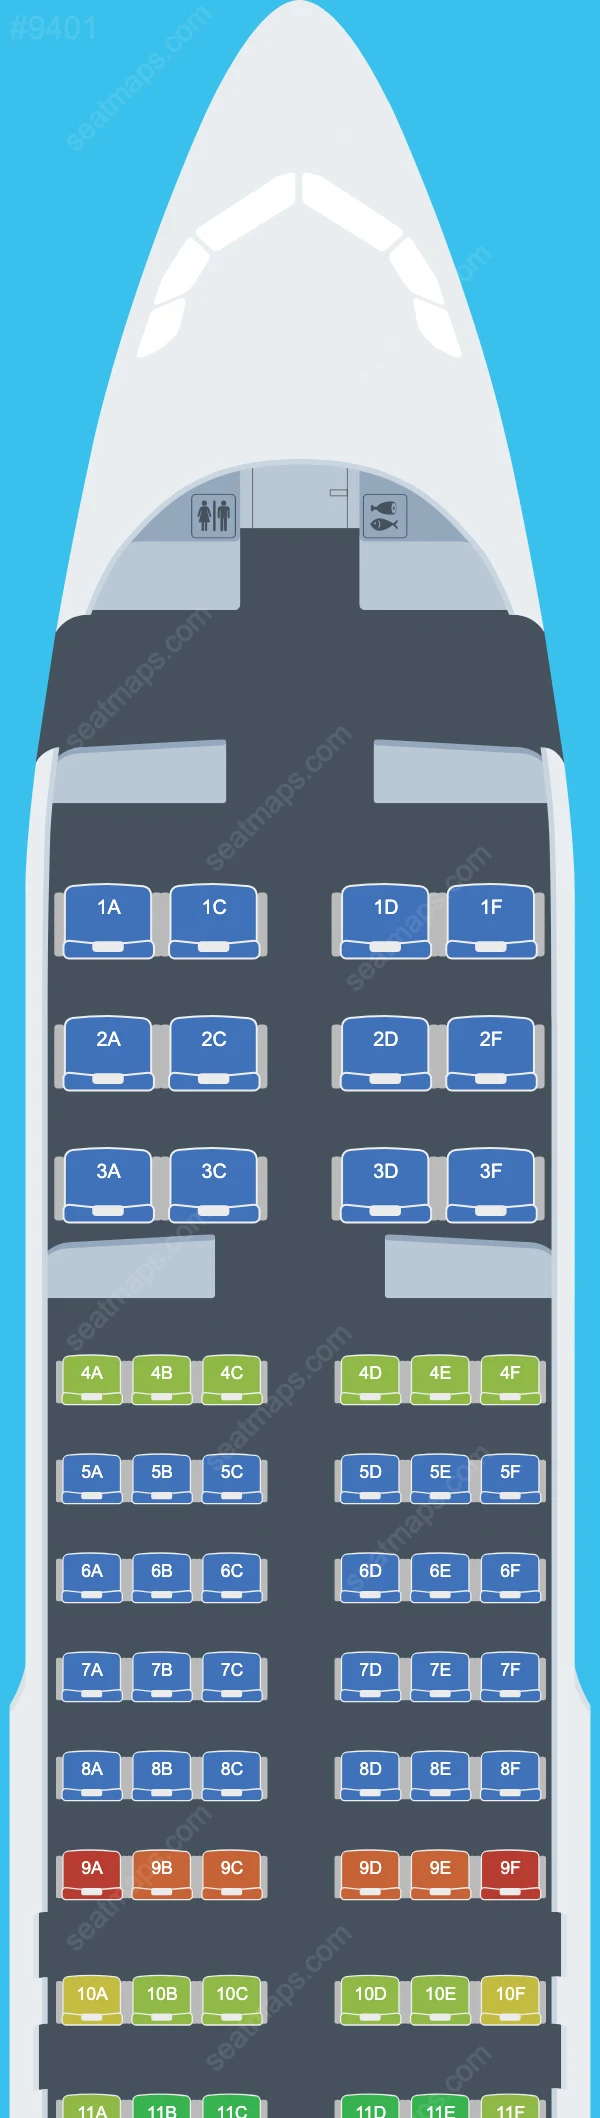 Air Seychelles Airbus A320 Seat Maps A320-200neo